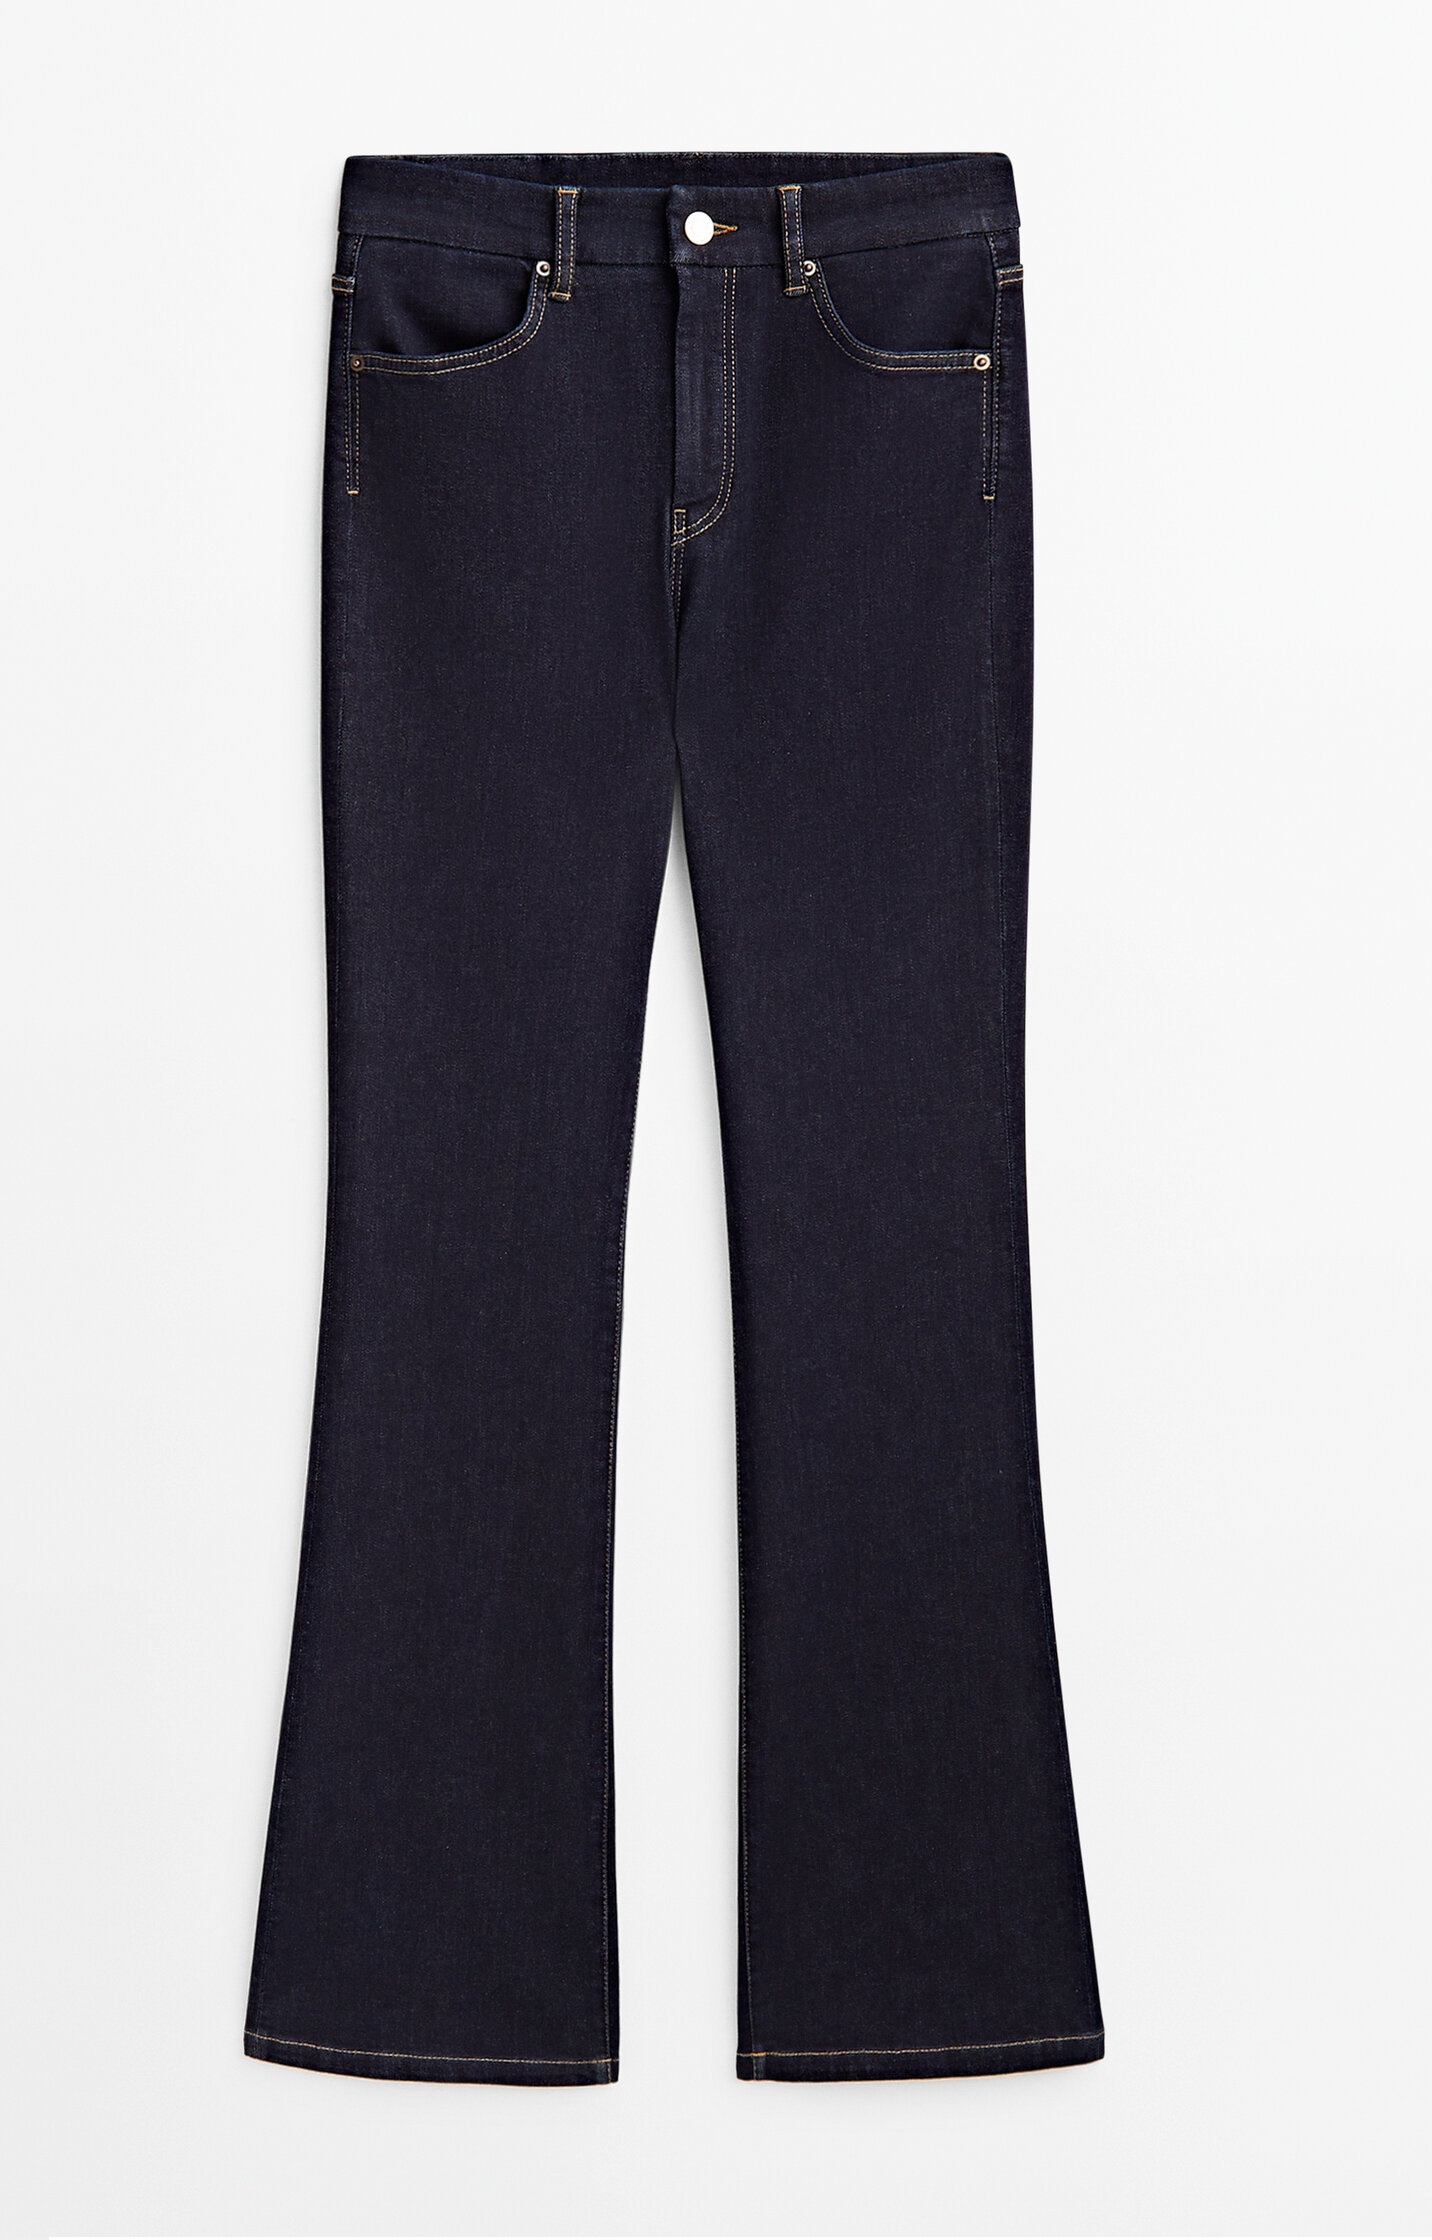 Джинсы Massimo Dutti Skinny Flare Fit High-waist, темно-синий джинсы расклешенные с высокой посадкой s синий